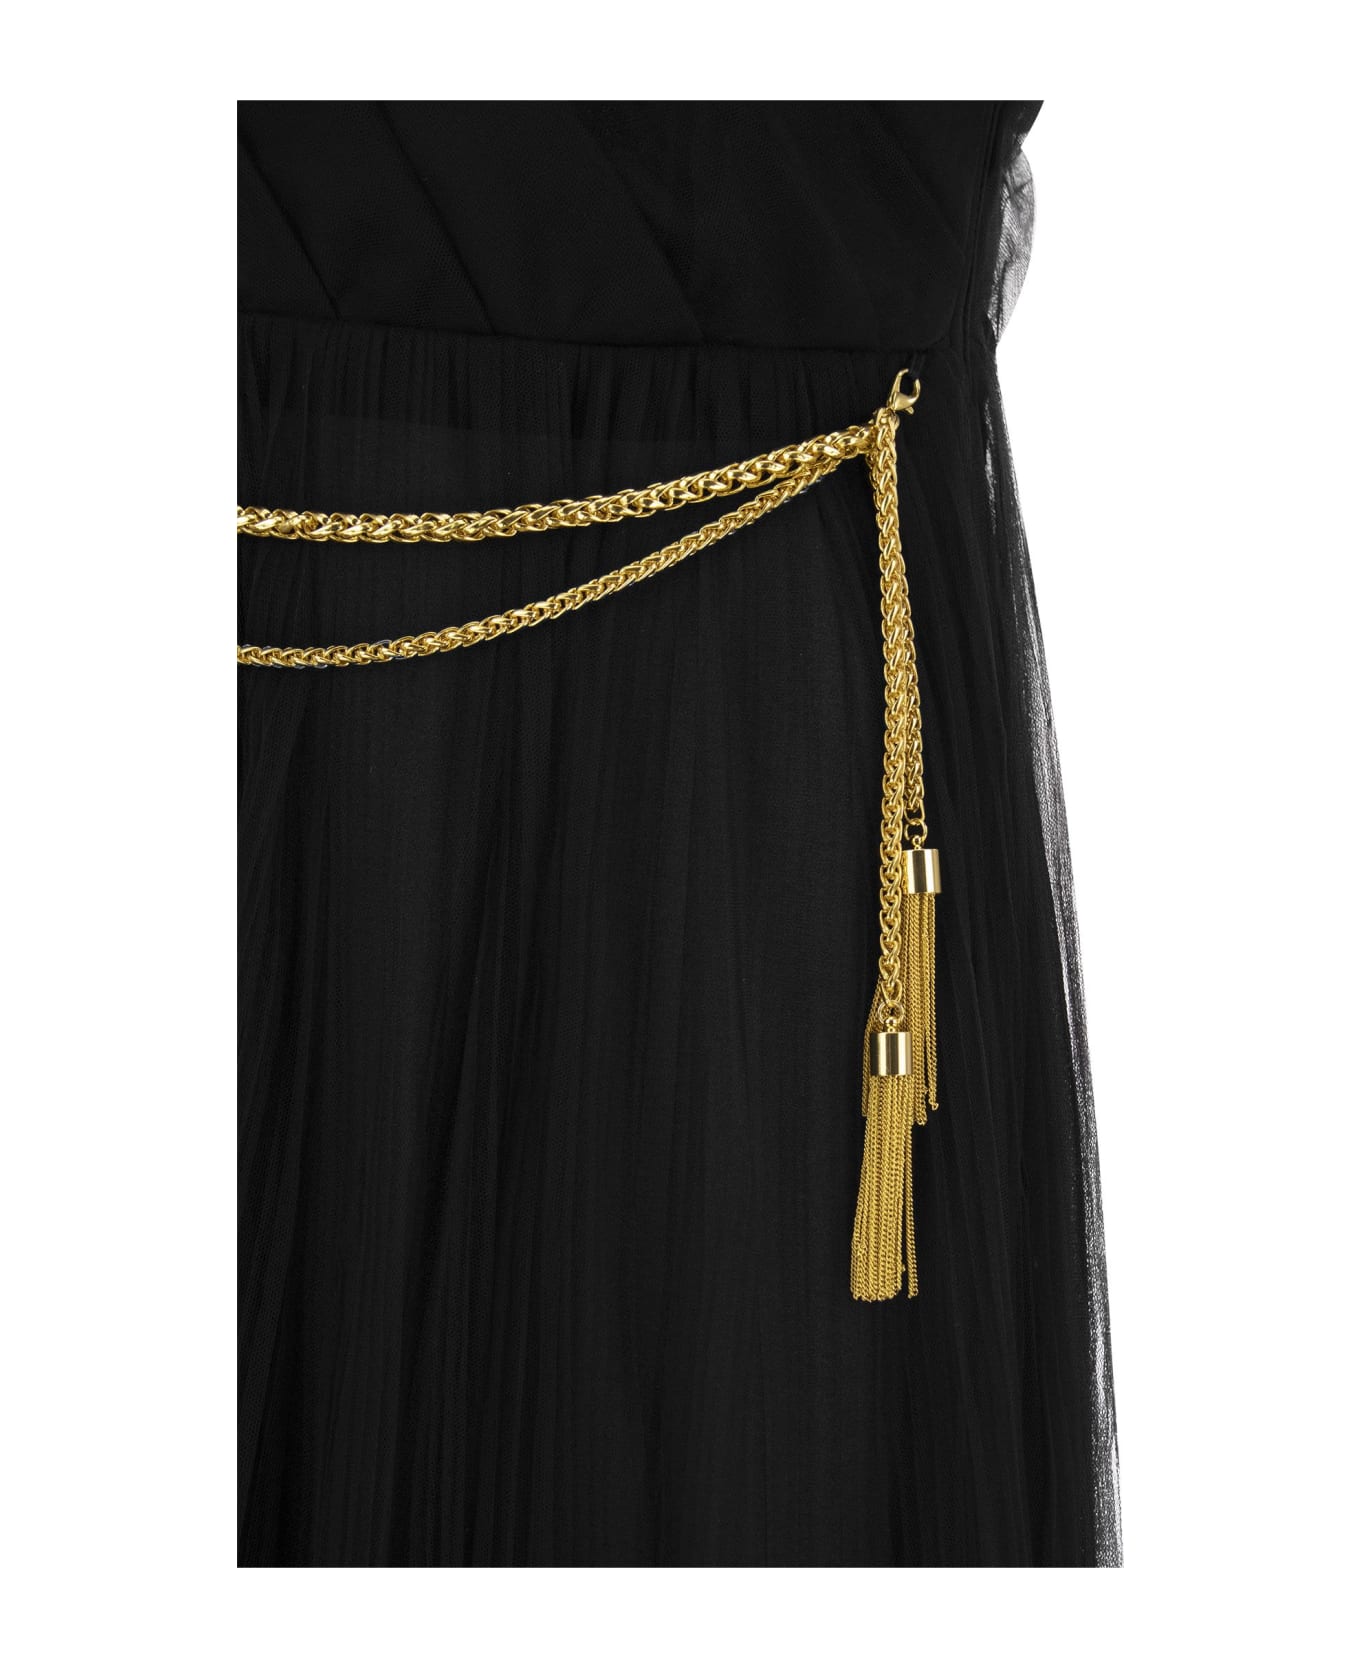 Elisabetta Franchi One-shoulder Tulle Red Carpet Dress - Black